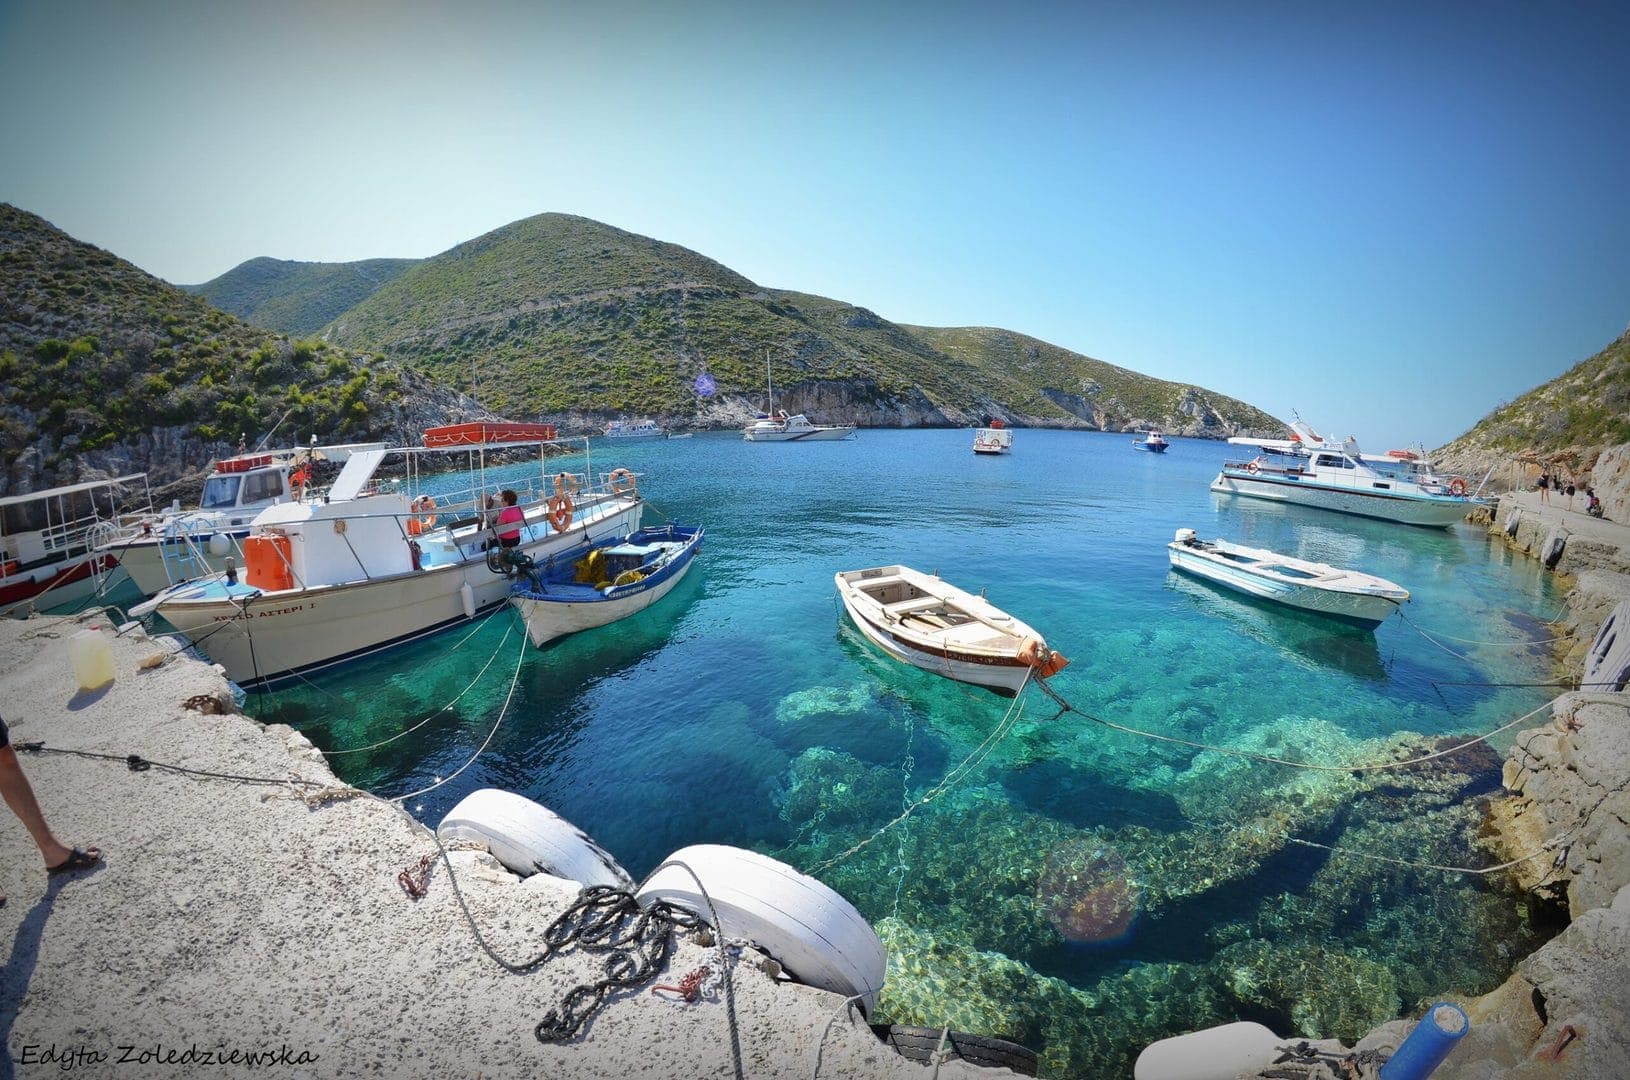 Łódki w malowniczej zatoce Porto Vromi na Zakynthos w Grecji, na lazurowych wodach morza, podczas wycieczki fakultatywnej na Zakynthos